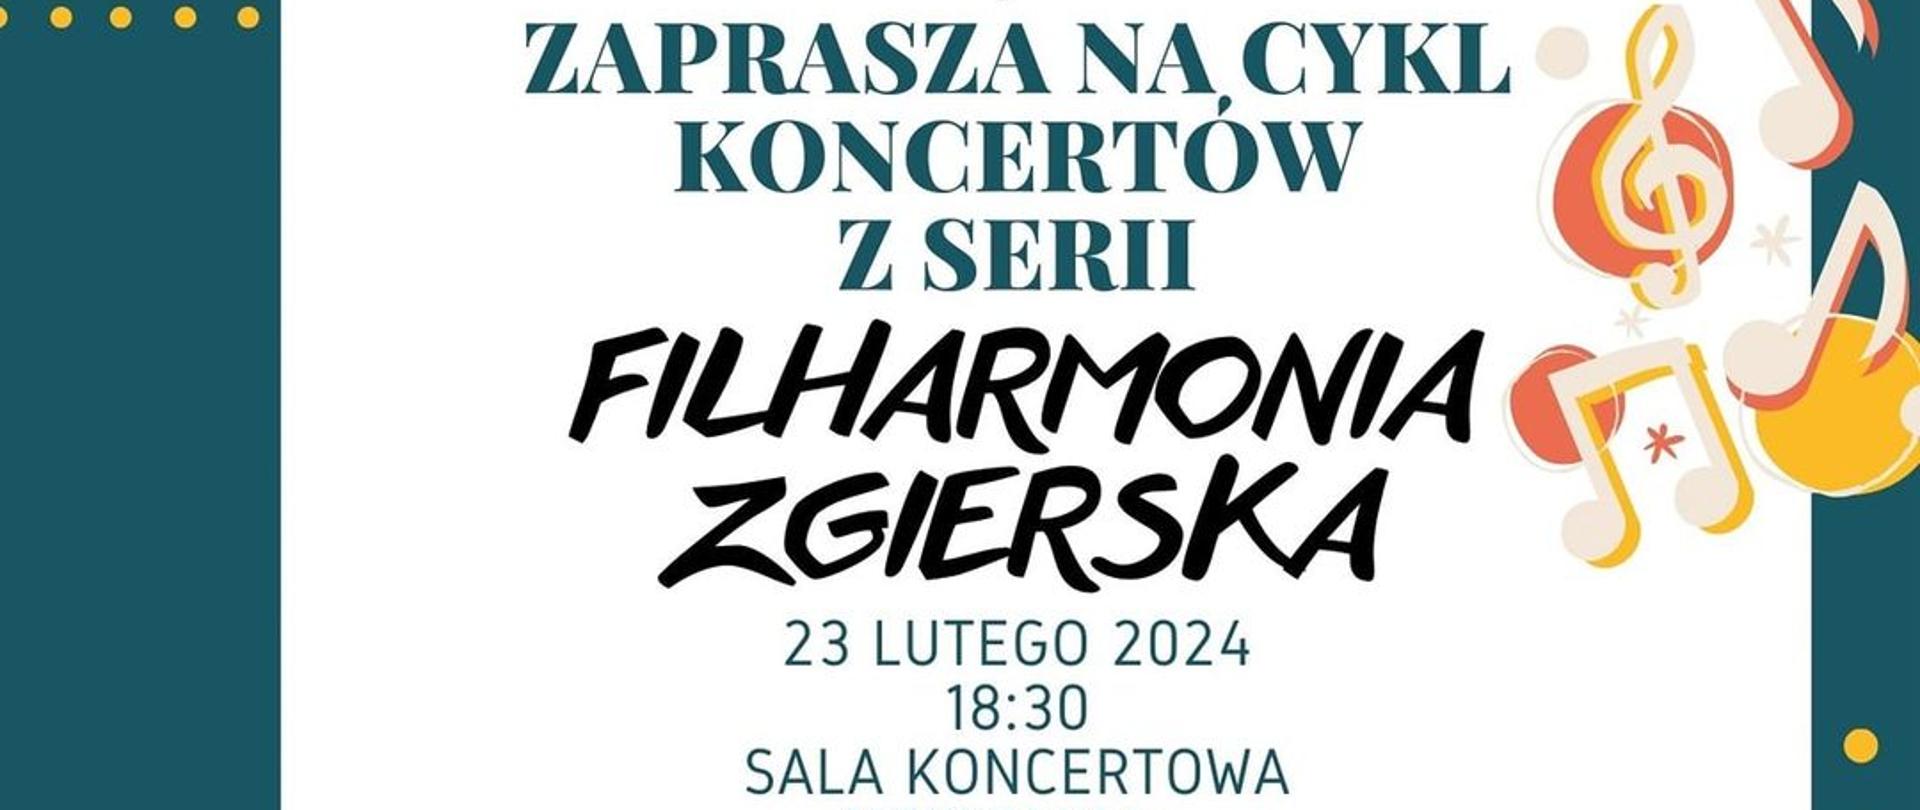 Cykl koncertów Filharmonia Zgierska 